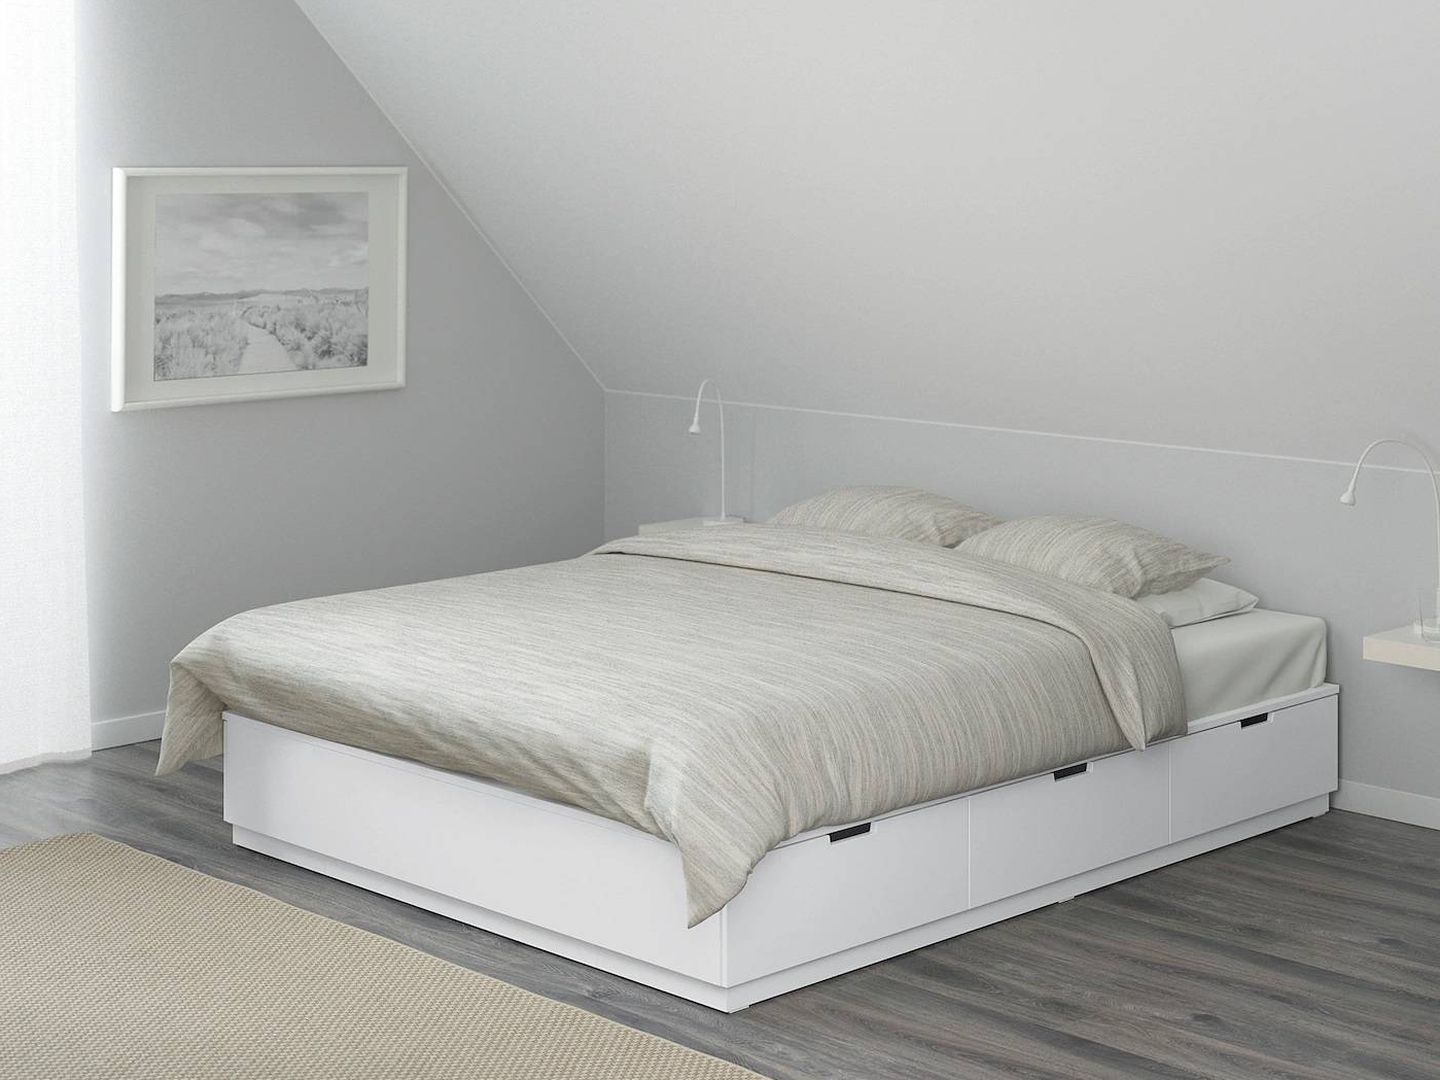 En Ikea puedes encontrar esta cama, la solución perfecta para tenerlo todo organizado. (Cortesía)